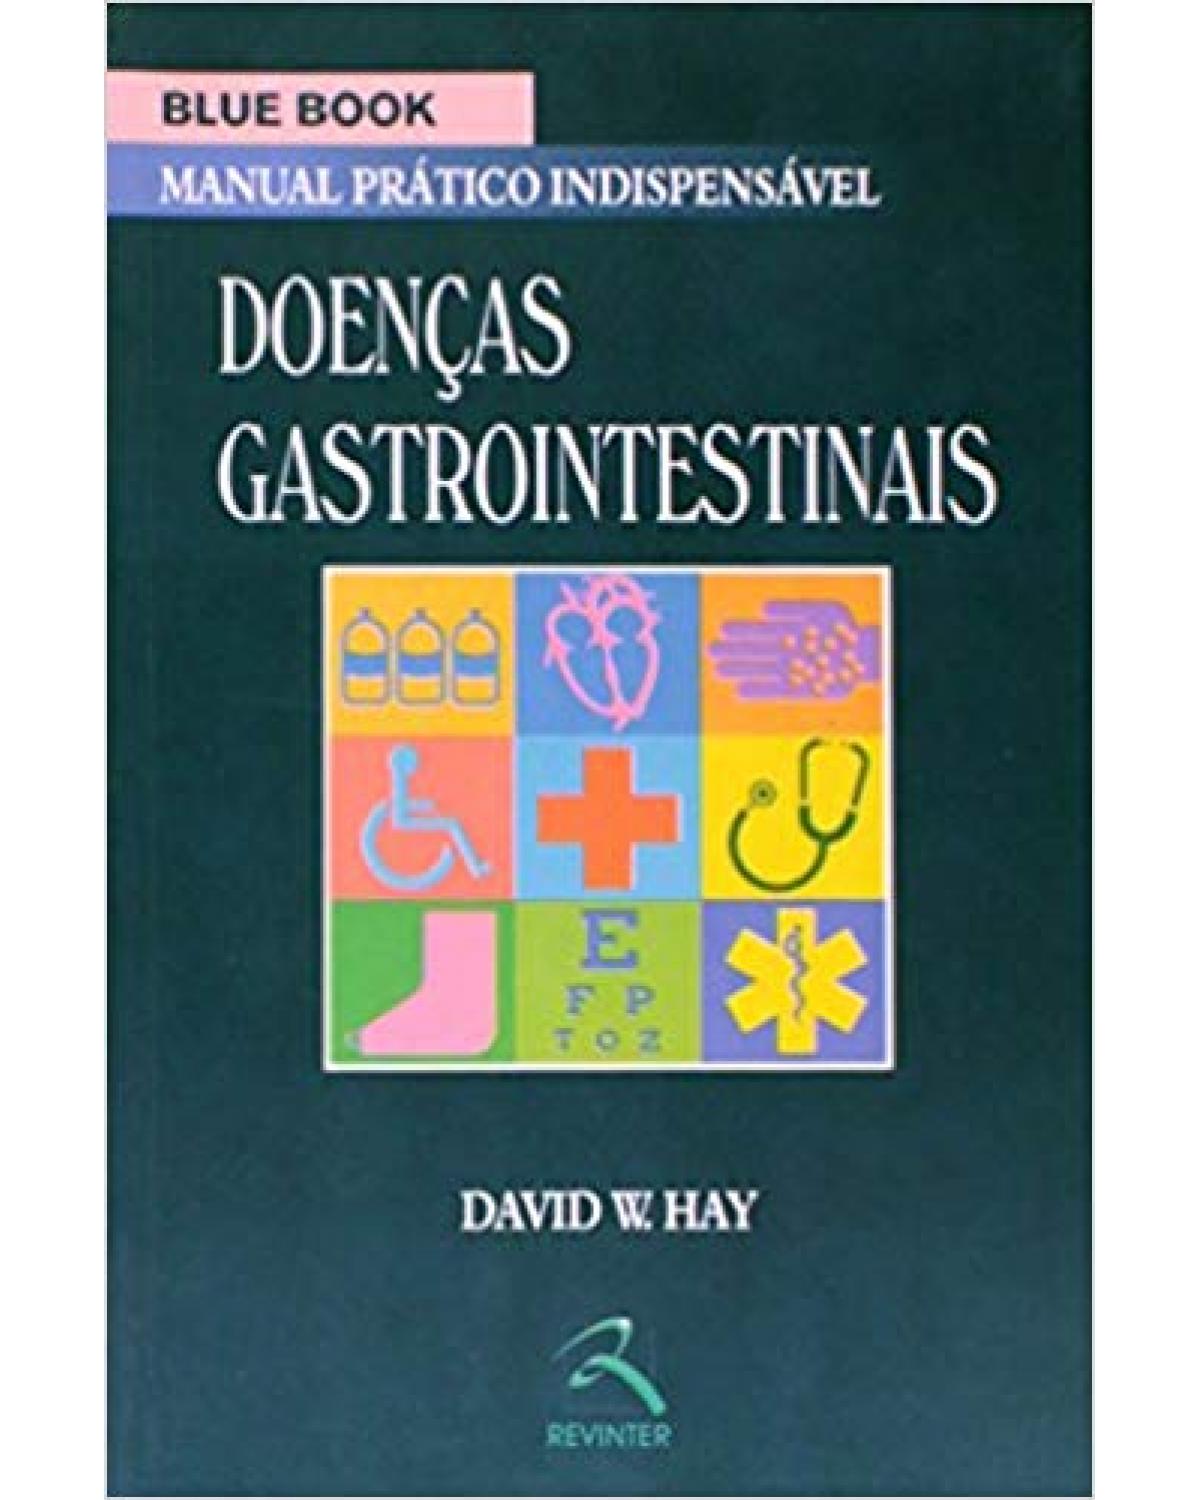 Blue book - Doenças gastrointestinais - manual prático indispensável - 1ª Edição | 2007